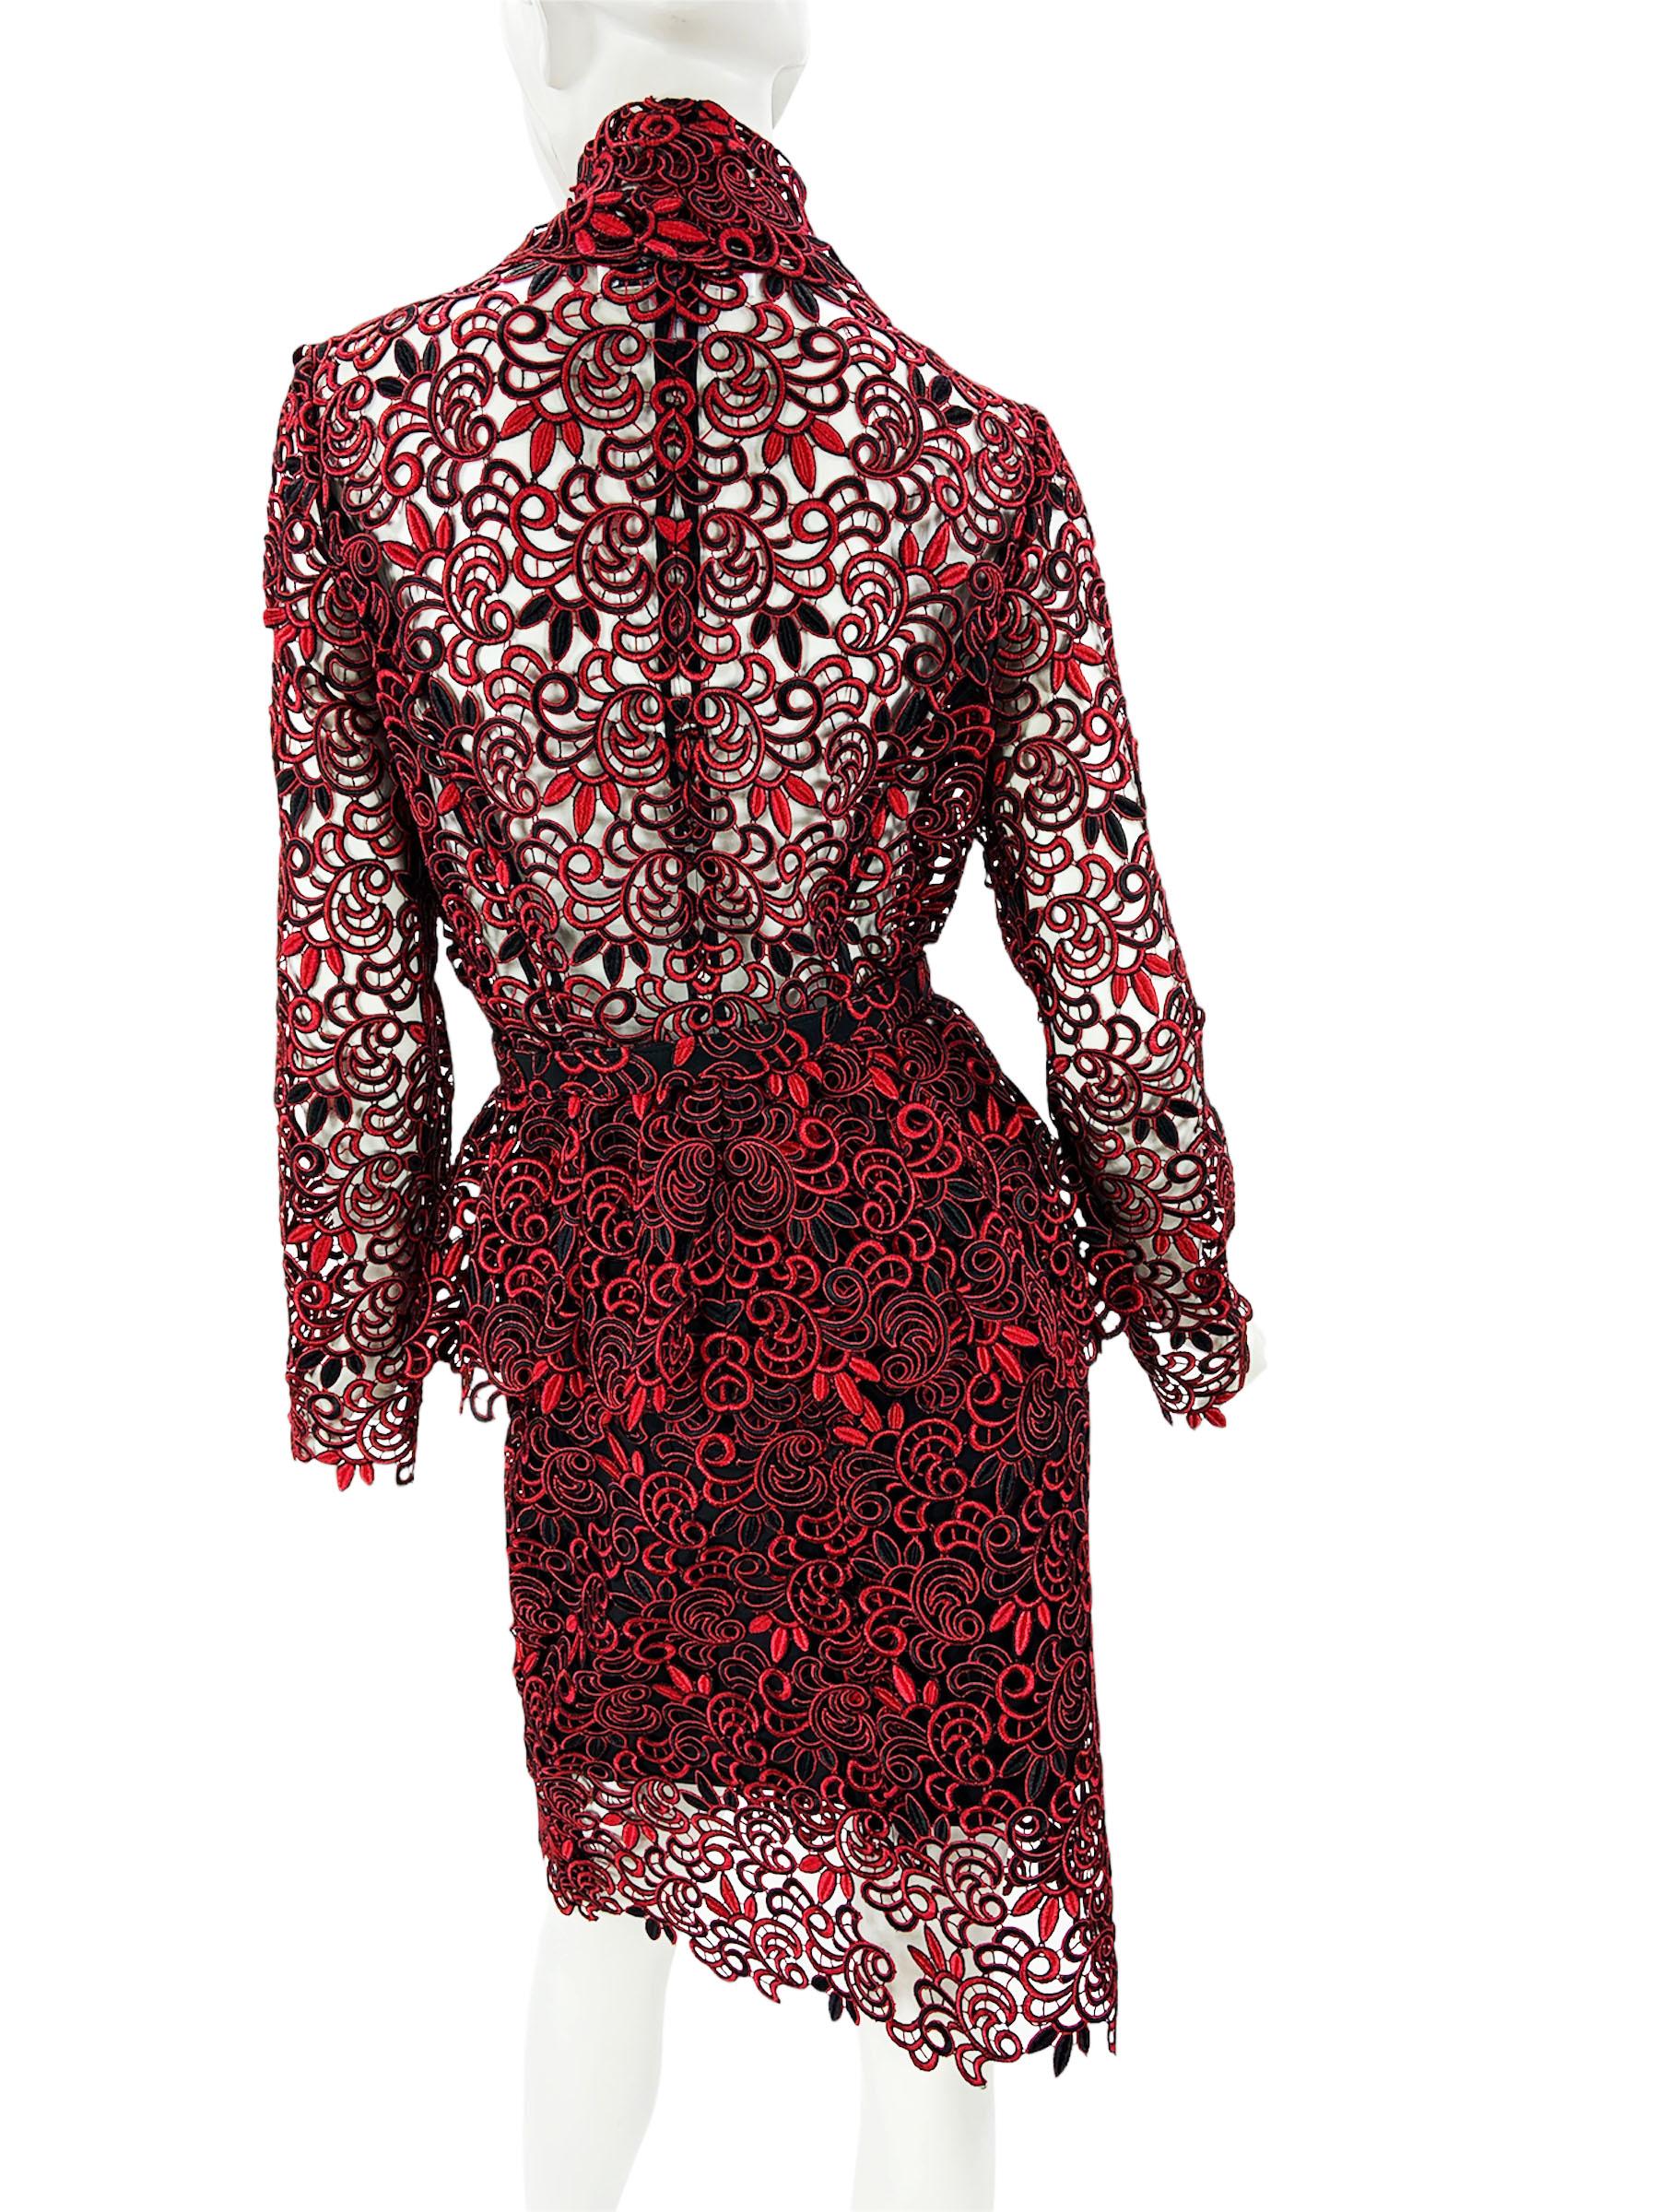 Women's New Oscar de la Renta Runway F/W 2014 Lace Red Black Belted Skirt Suit US 6 For Sale